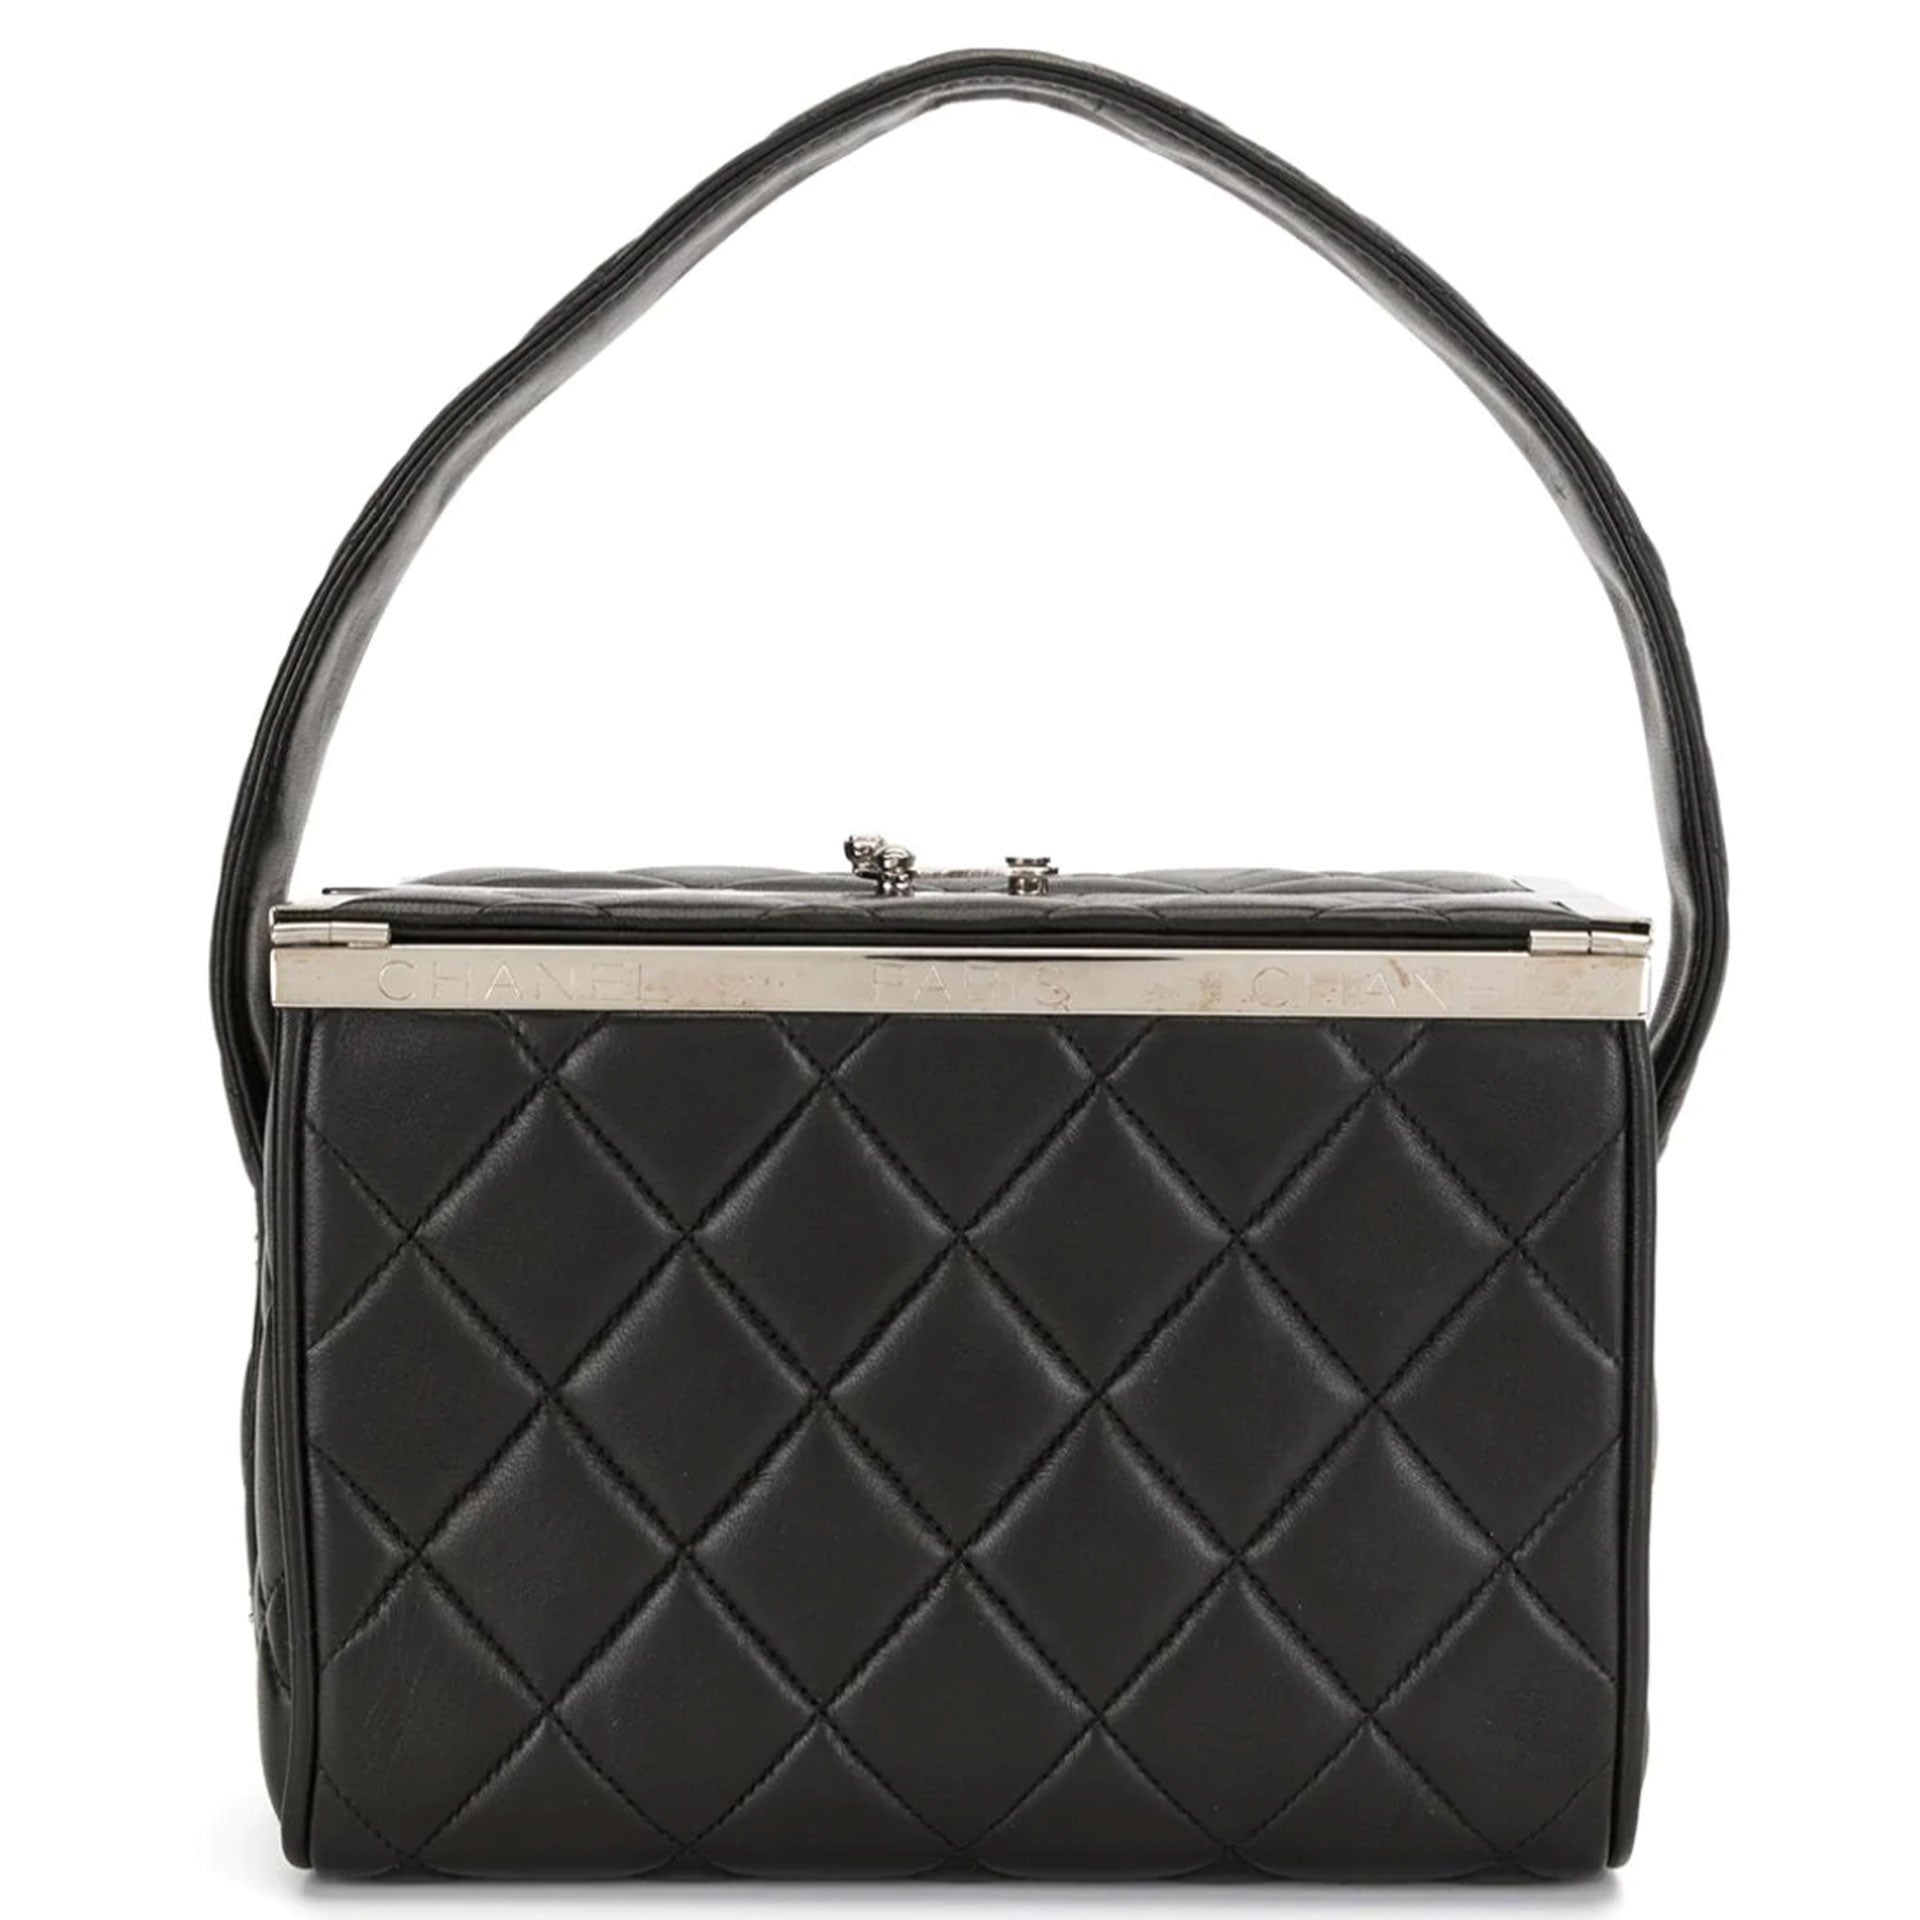 Chanel Chanel Matelasse Vanity Chain Shoulder Bag Leather Black